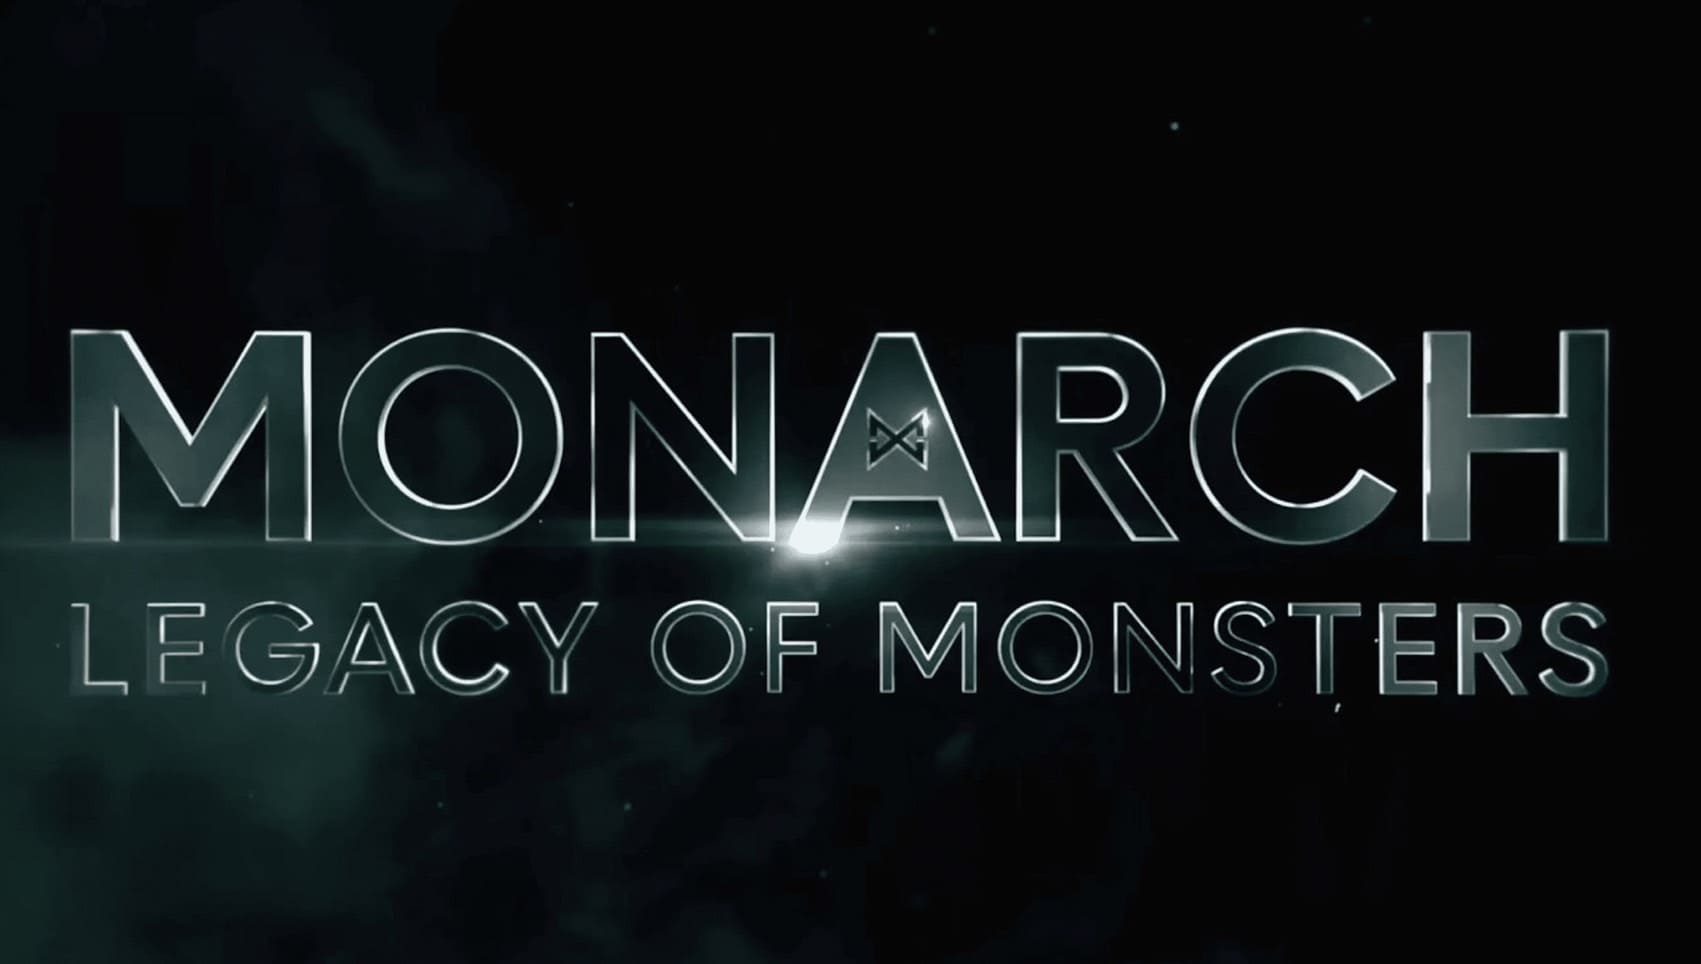 ( 傳奇影業 Legendary ) Apple TV+熱播中《君主計畫：神祕組織與怪獸之謎 Monarch: Legacy of Monsters 》『怪物宇宙』補完計畫 封面照片